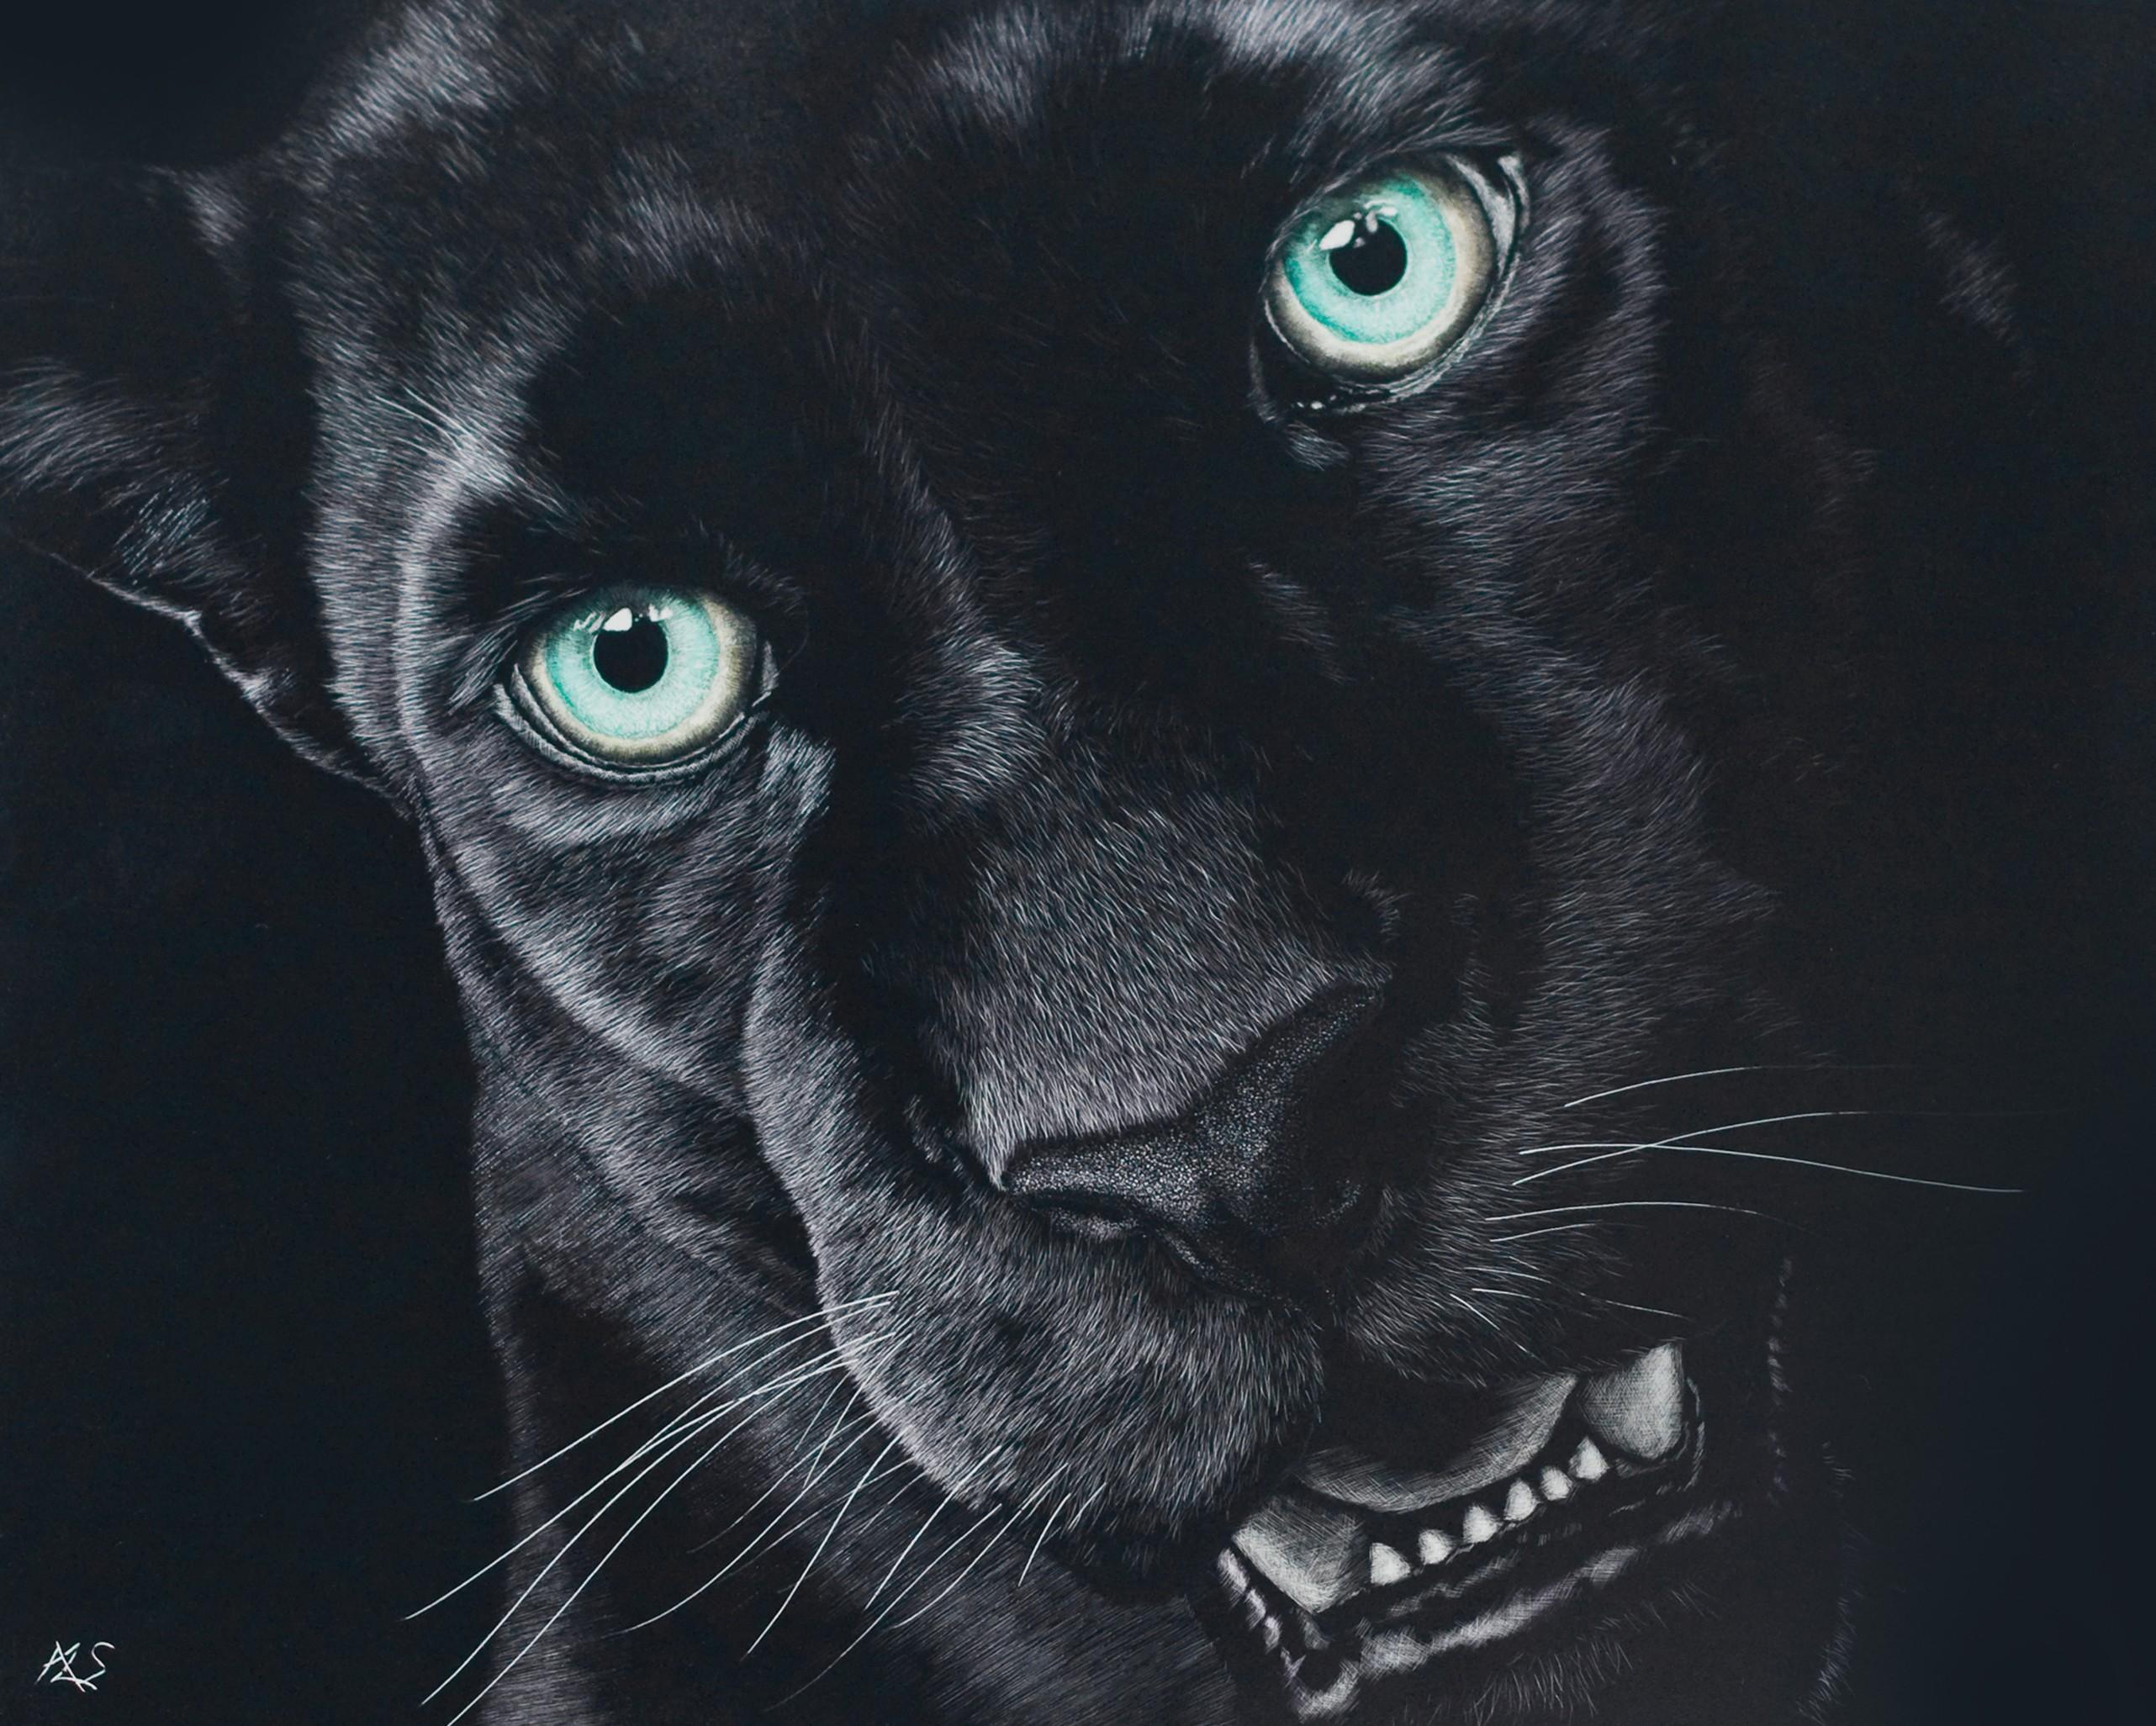 [71+] Black Jaguar Wallpaper | WallpaperSafari.com